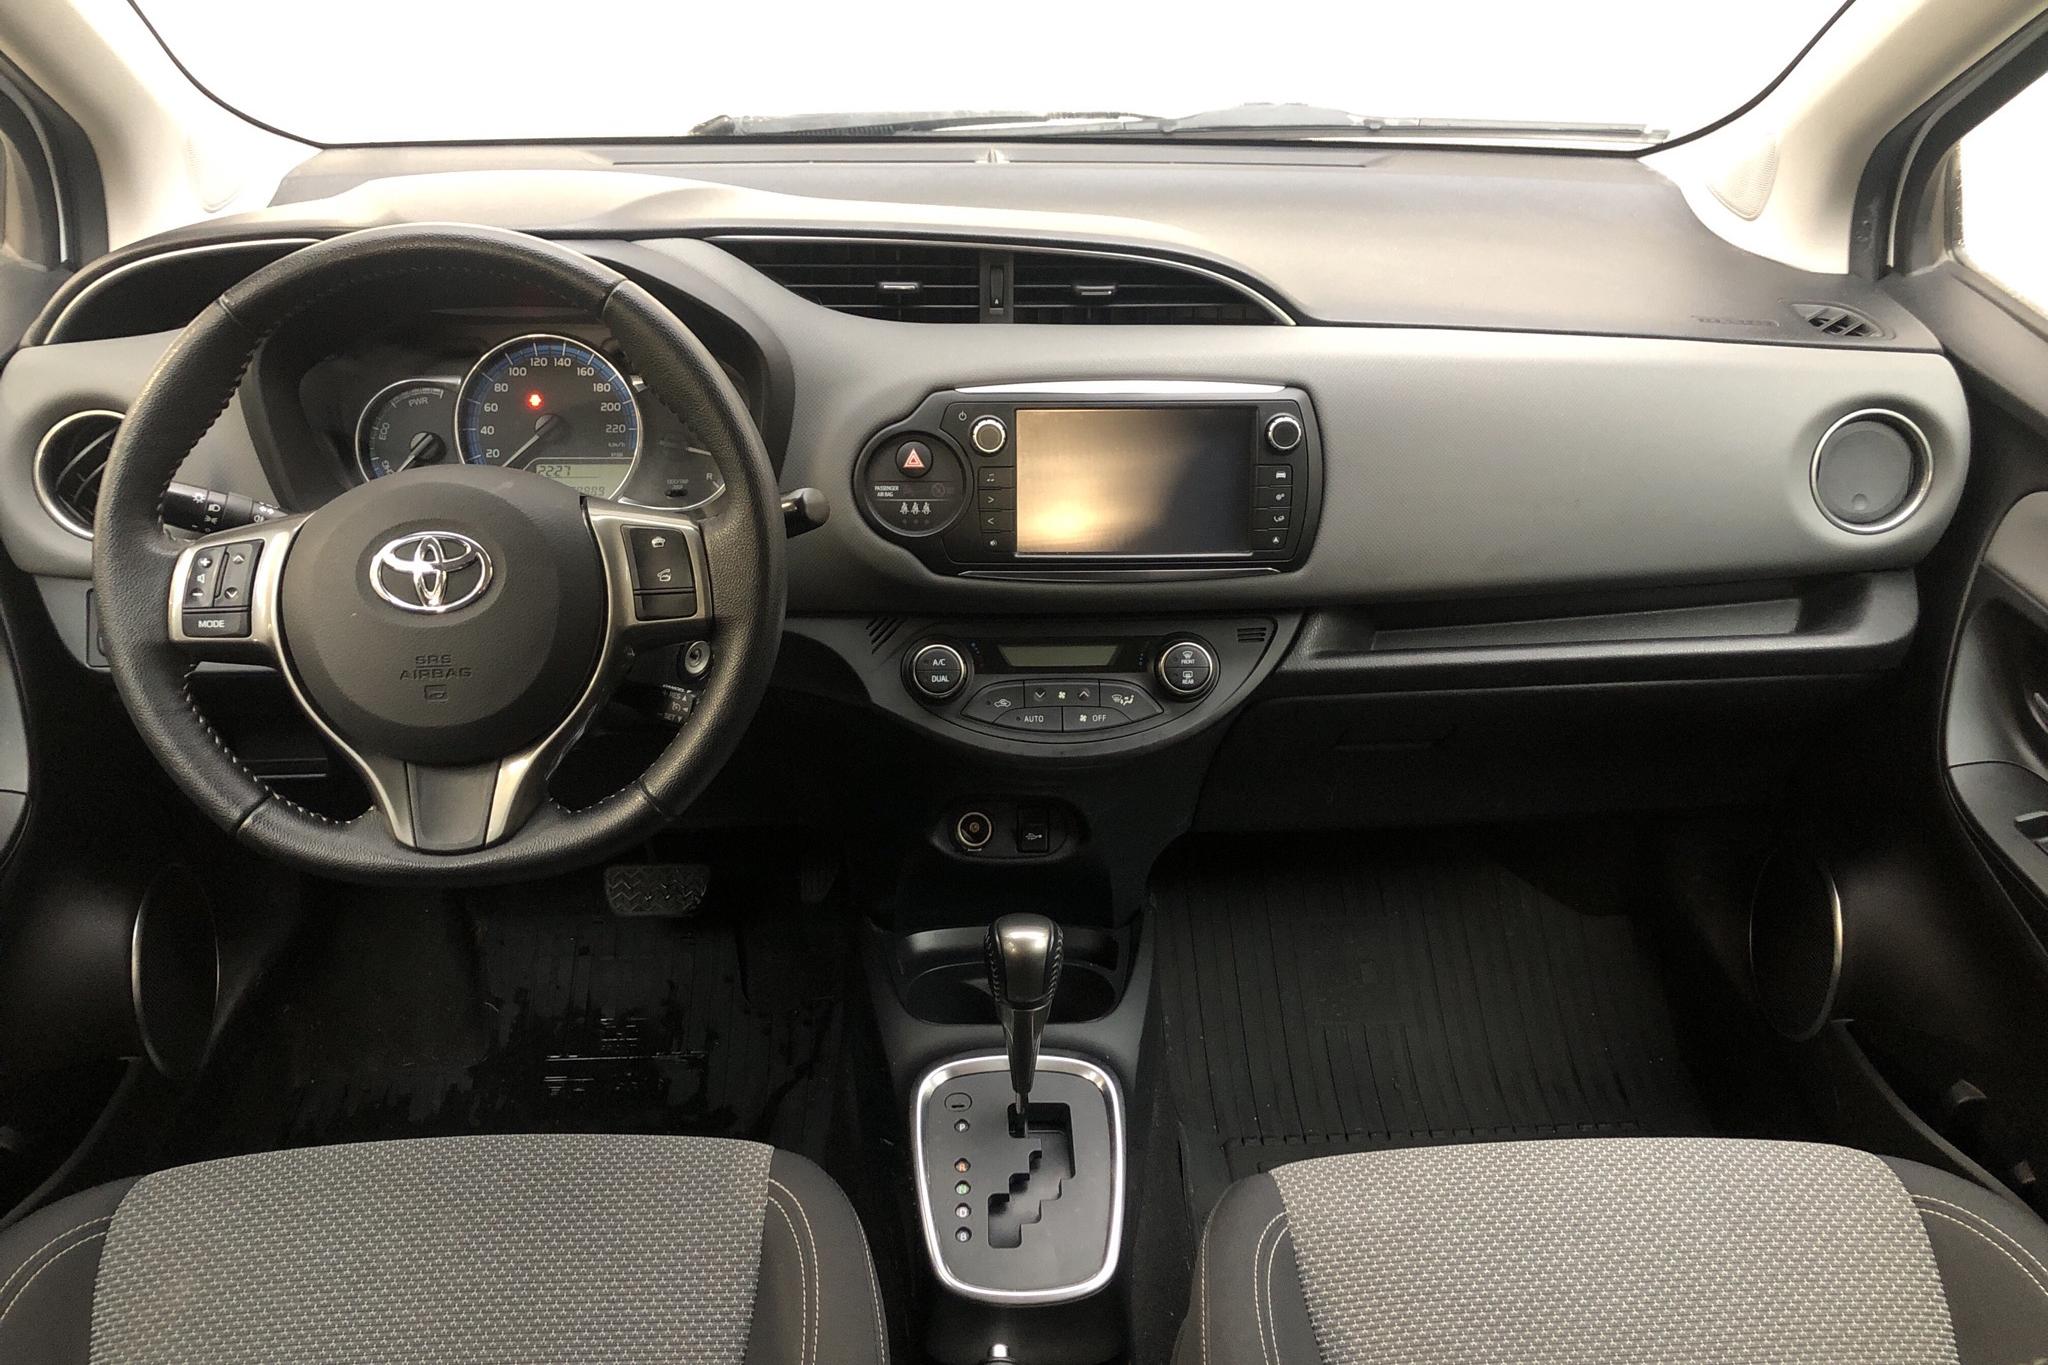 Toyota Yaris 1.5 HSD 5dr (75hk) - 98 880 km - Automatic - white - 2015